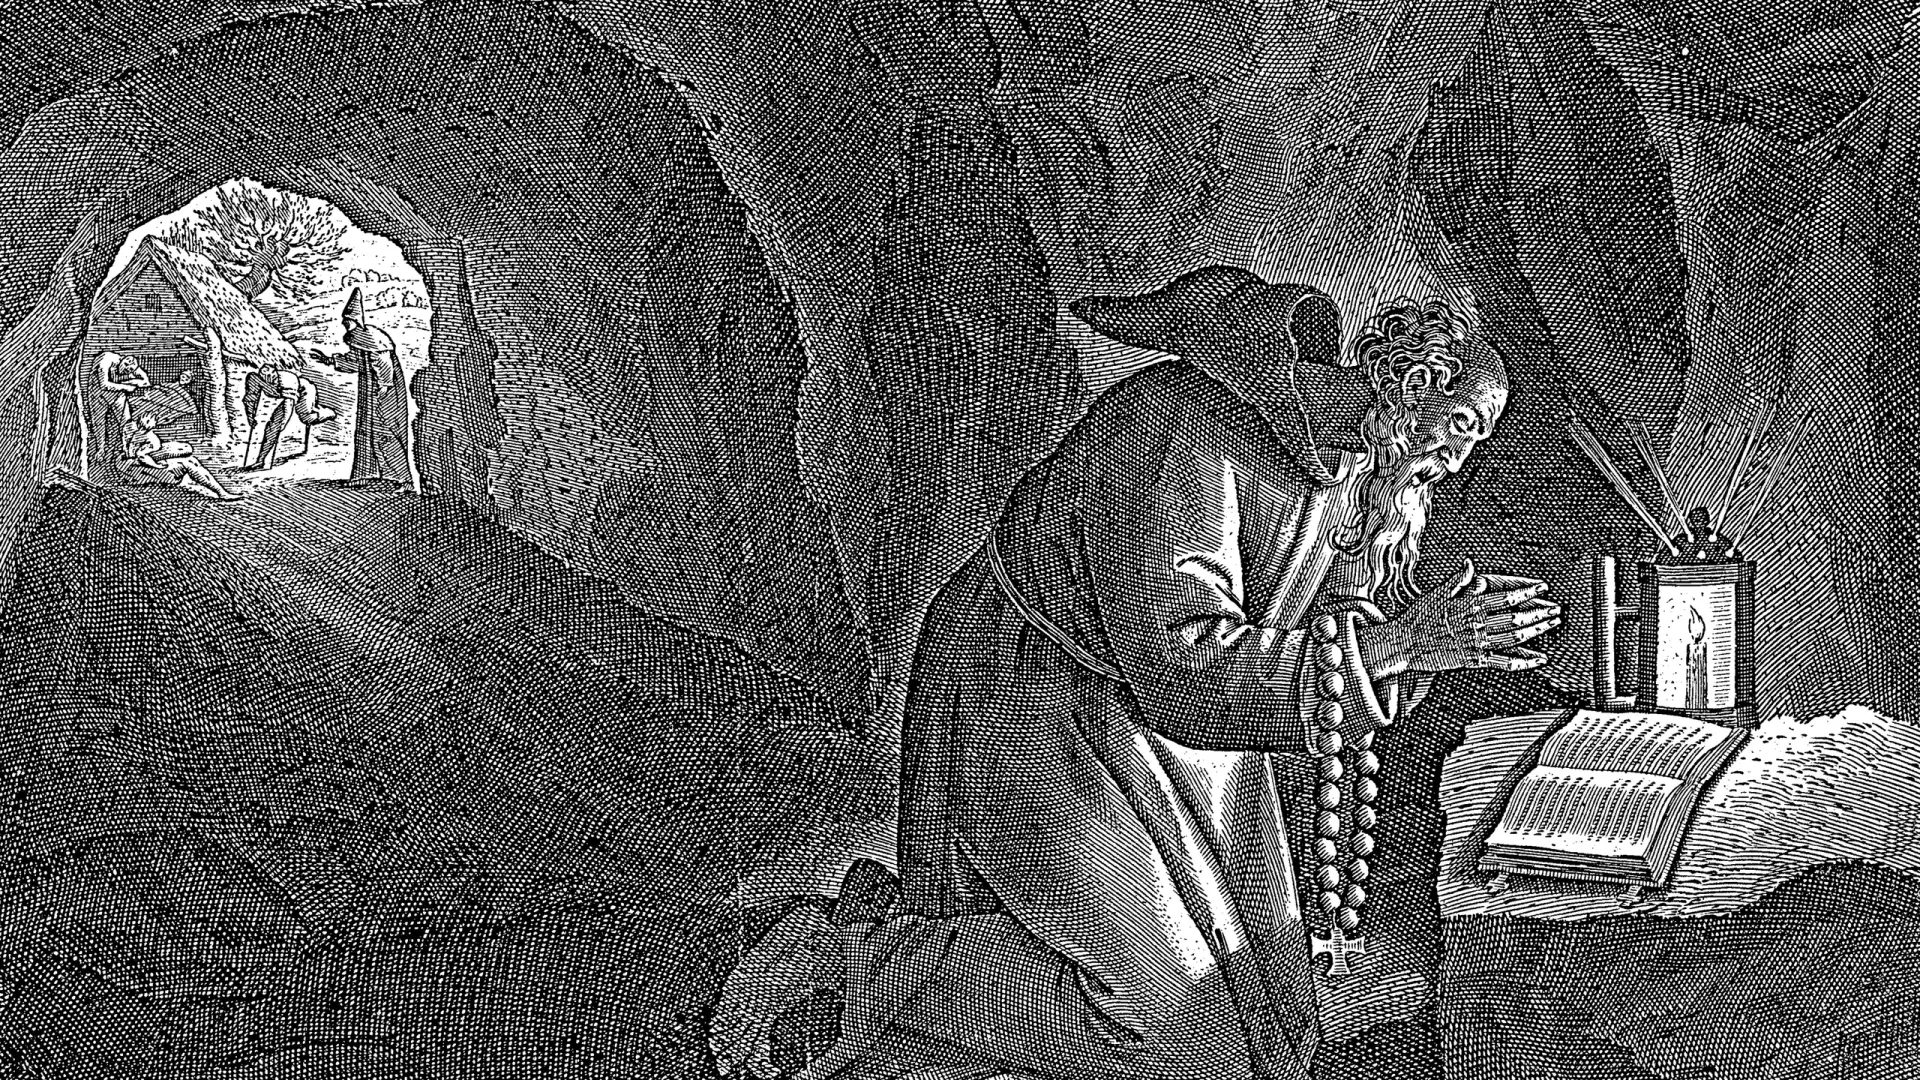 Святой Макарий Египетский молится в пещере. Источник: Morphart Creation / Shutterstock / Fotodom